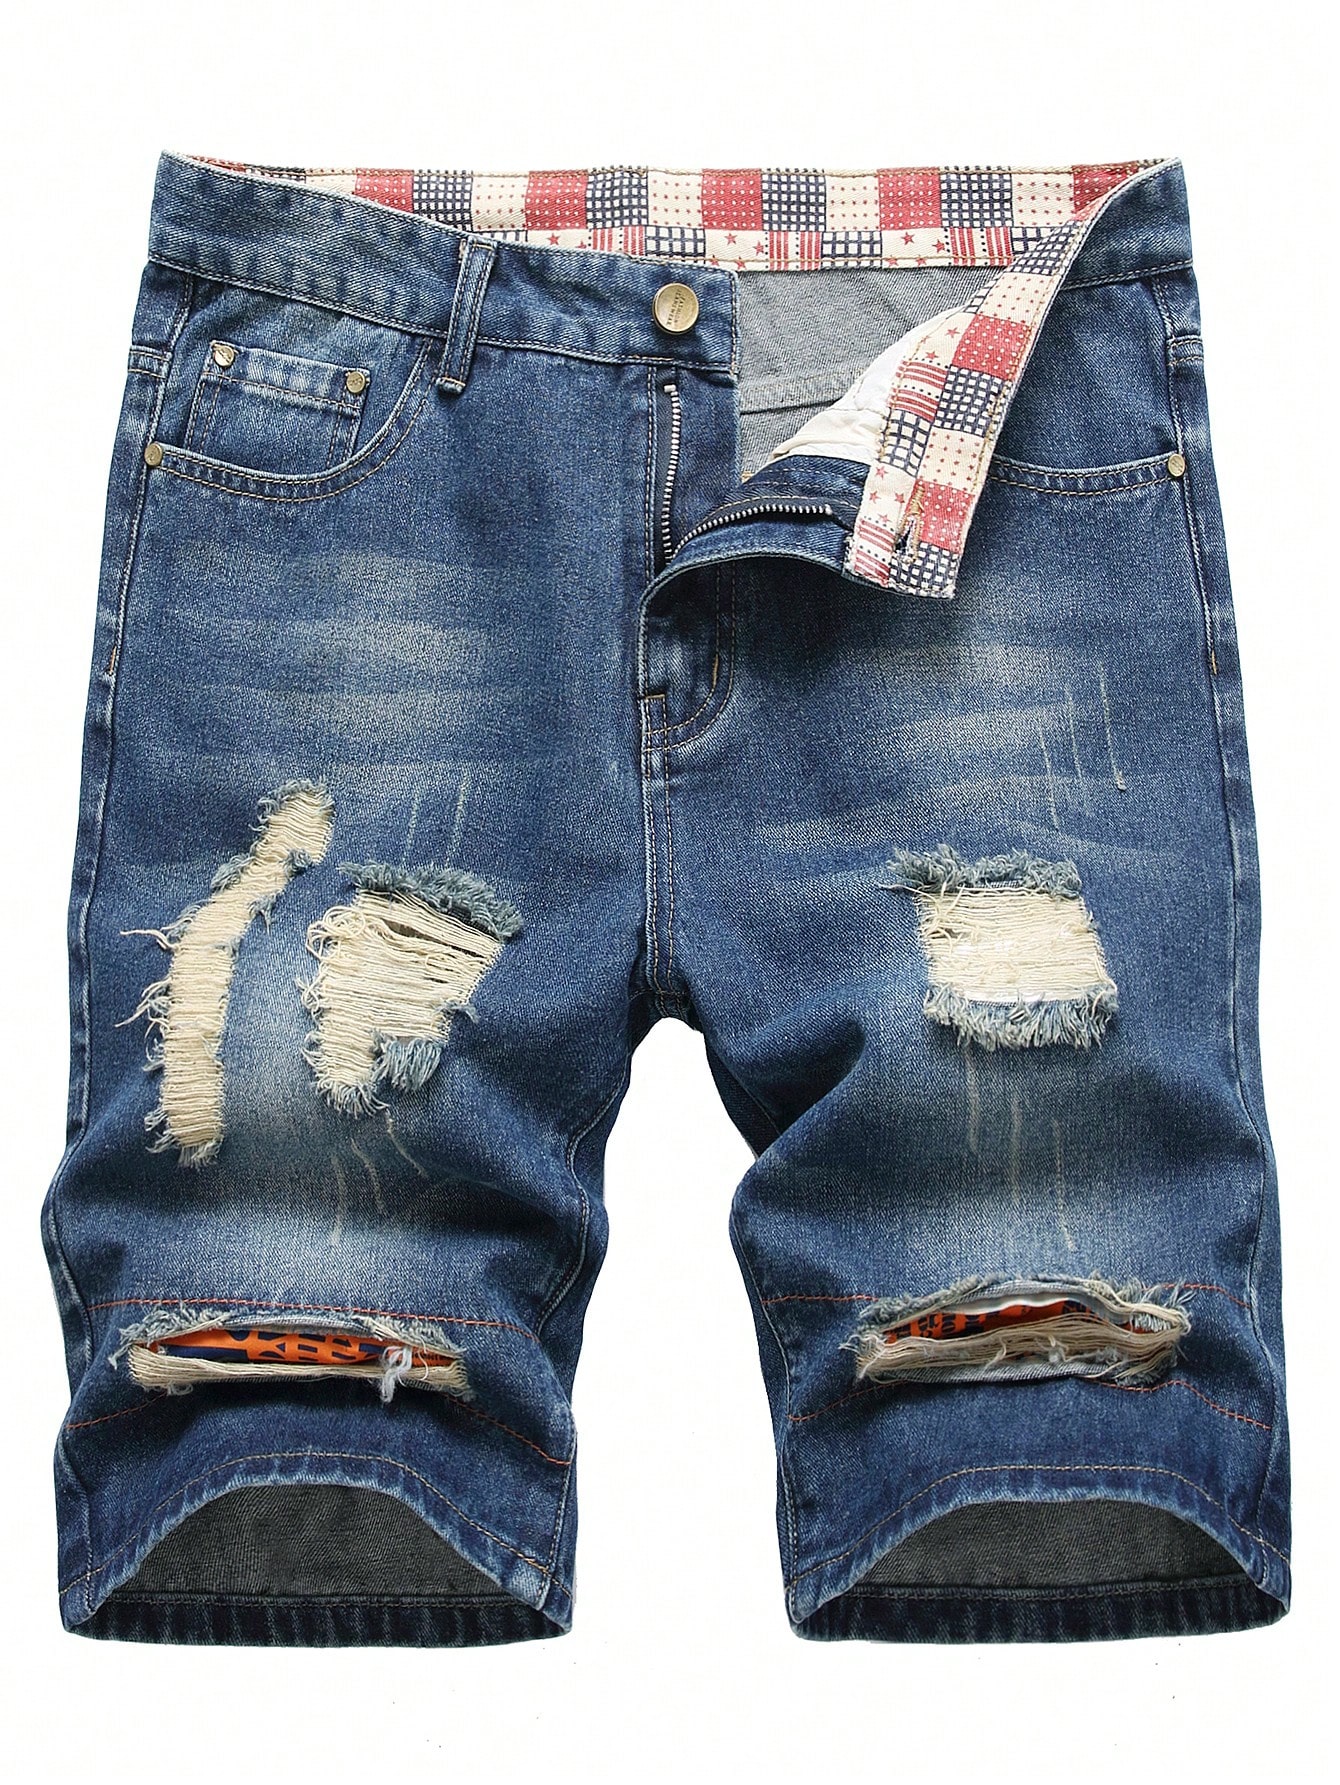 Мужские джинсовые шорты с потертостями и карманами, средняя стирка